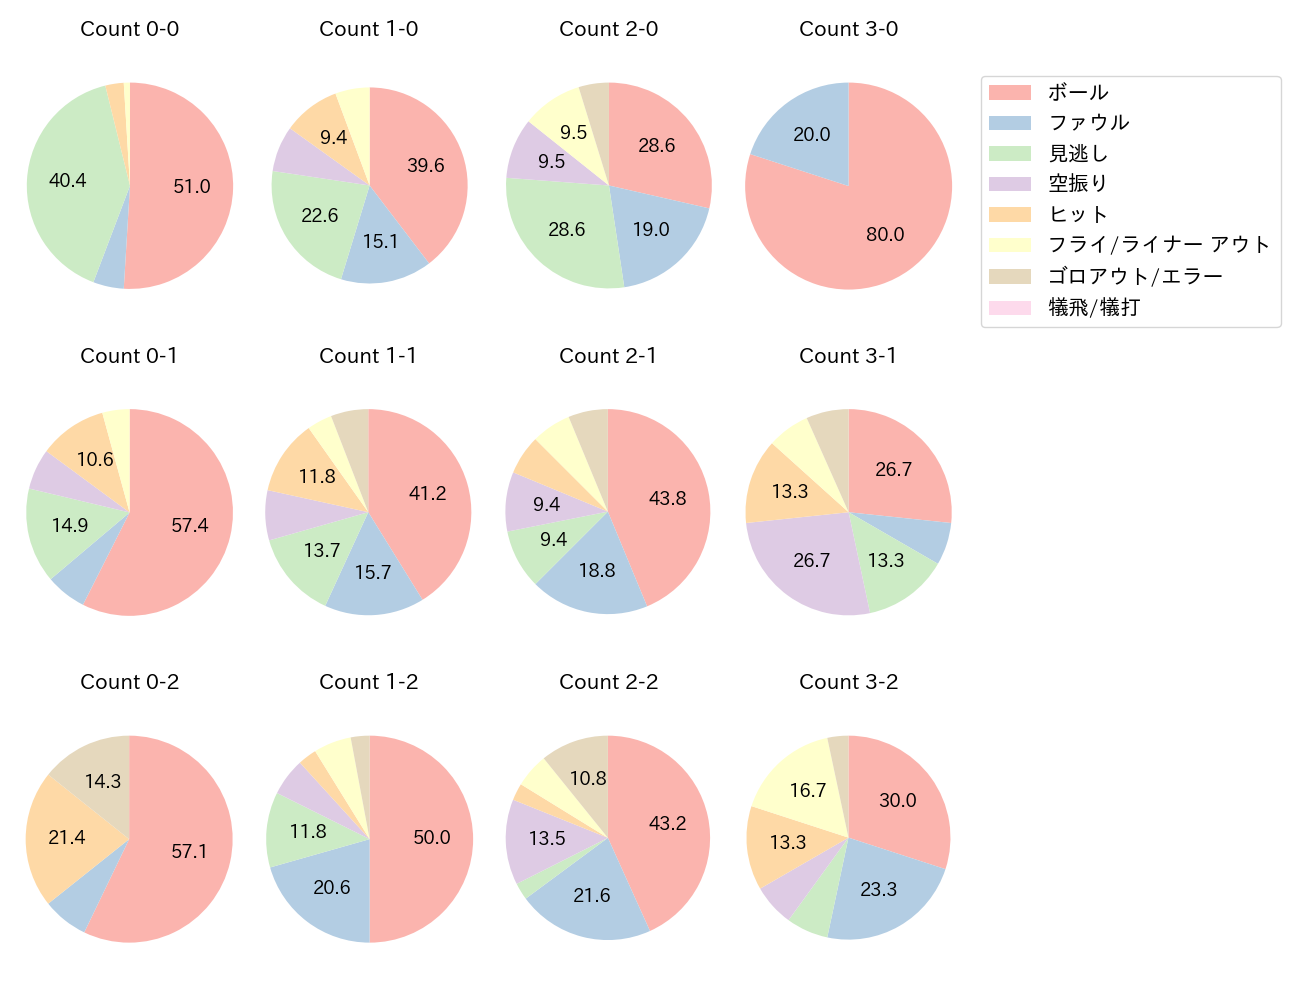 鈴木 誠也の球数分布(2021年9月)